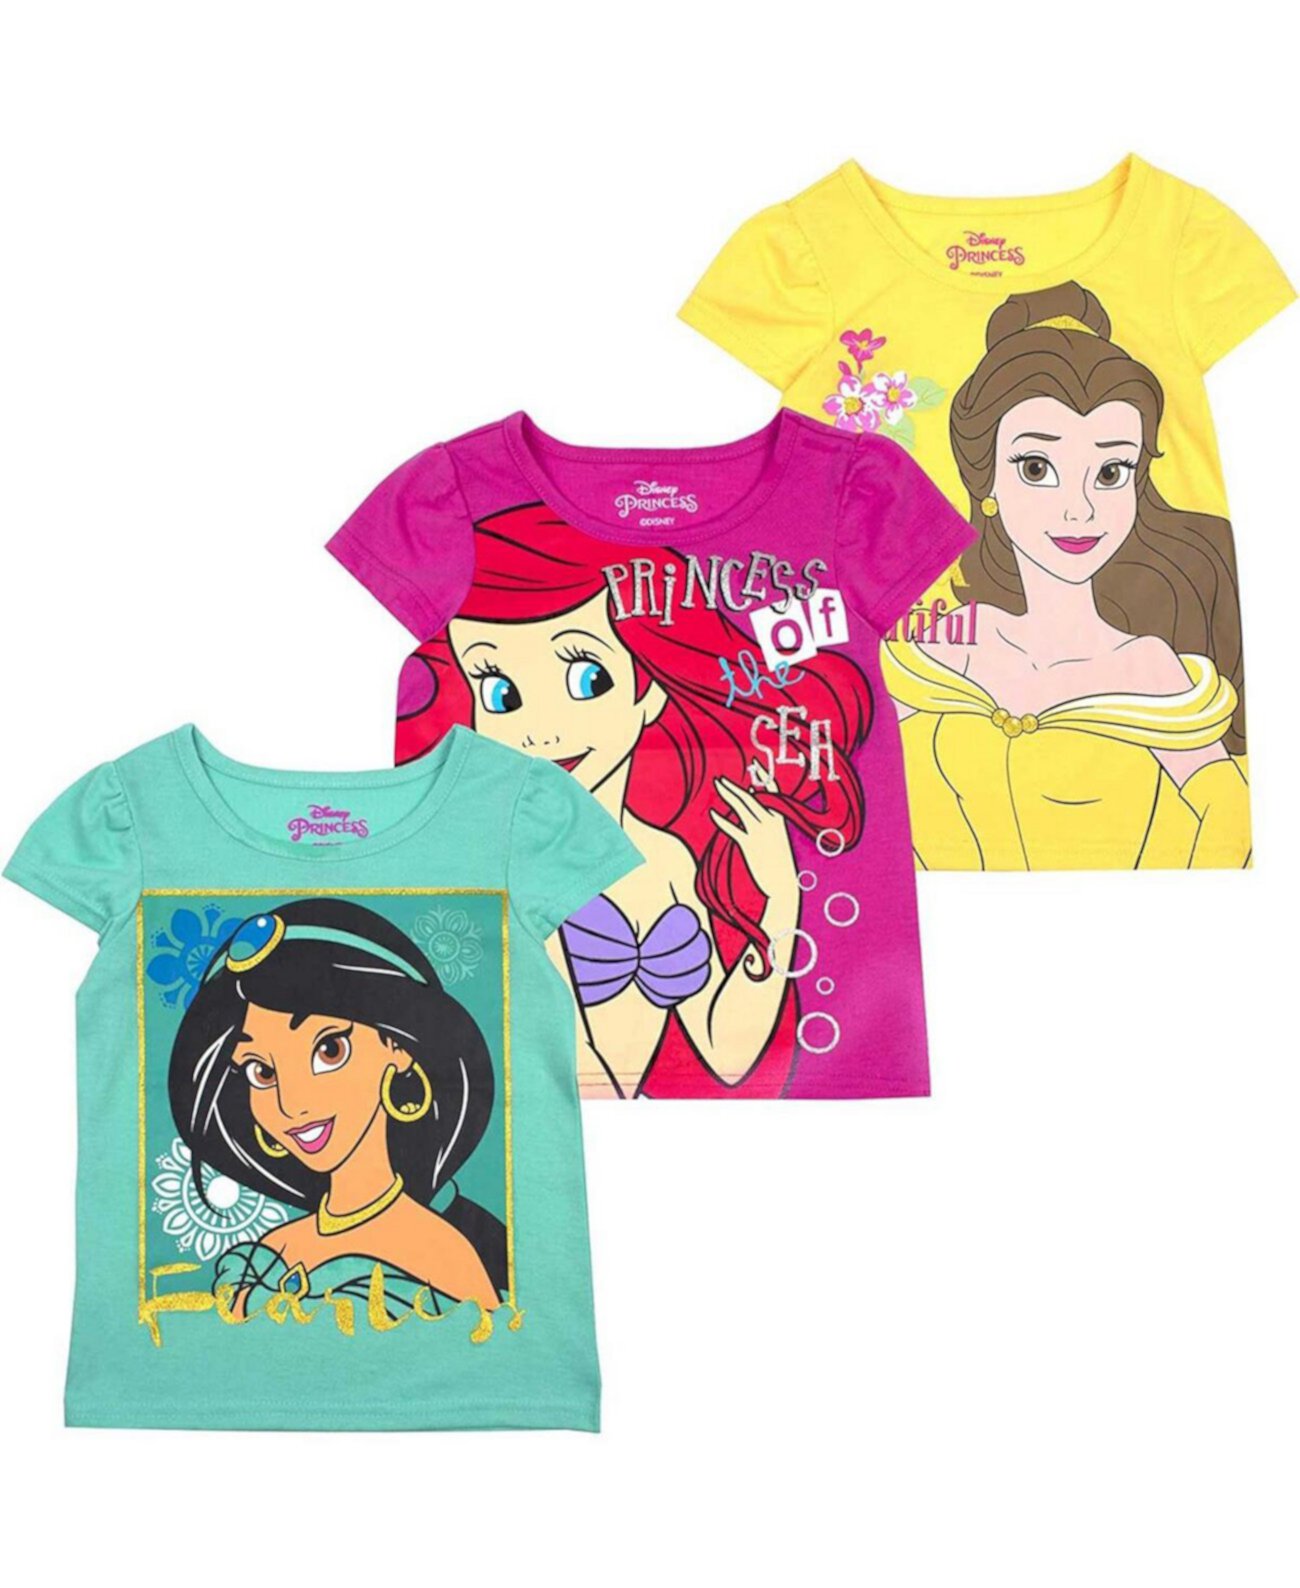 Набор из 3 футболок с рисунком «Принцессы Диснея» для маленьких мальчиков и девочек, желтые, розовые и зеленые Children's Apparel Network